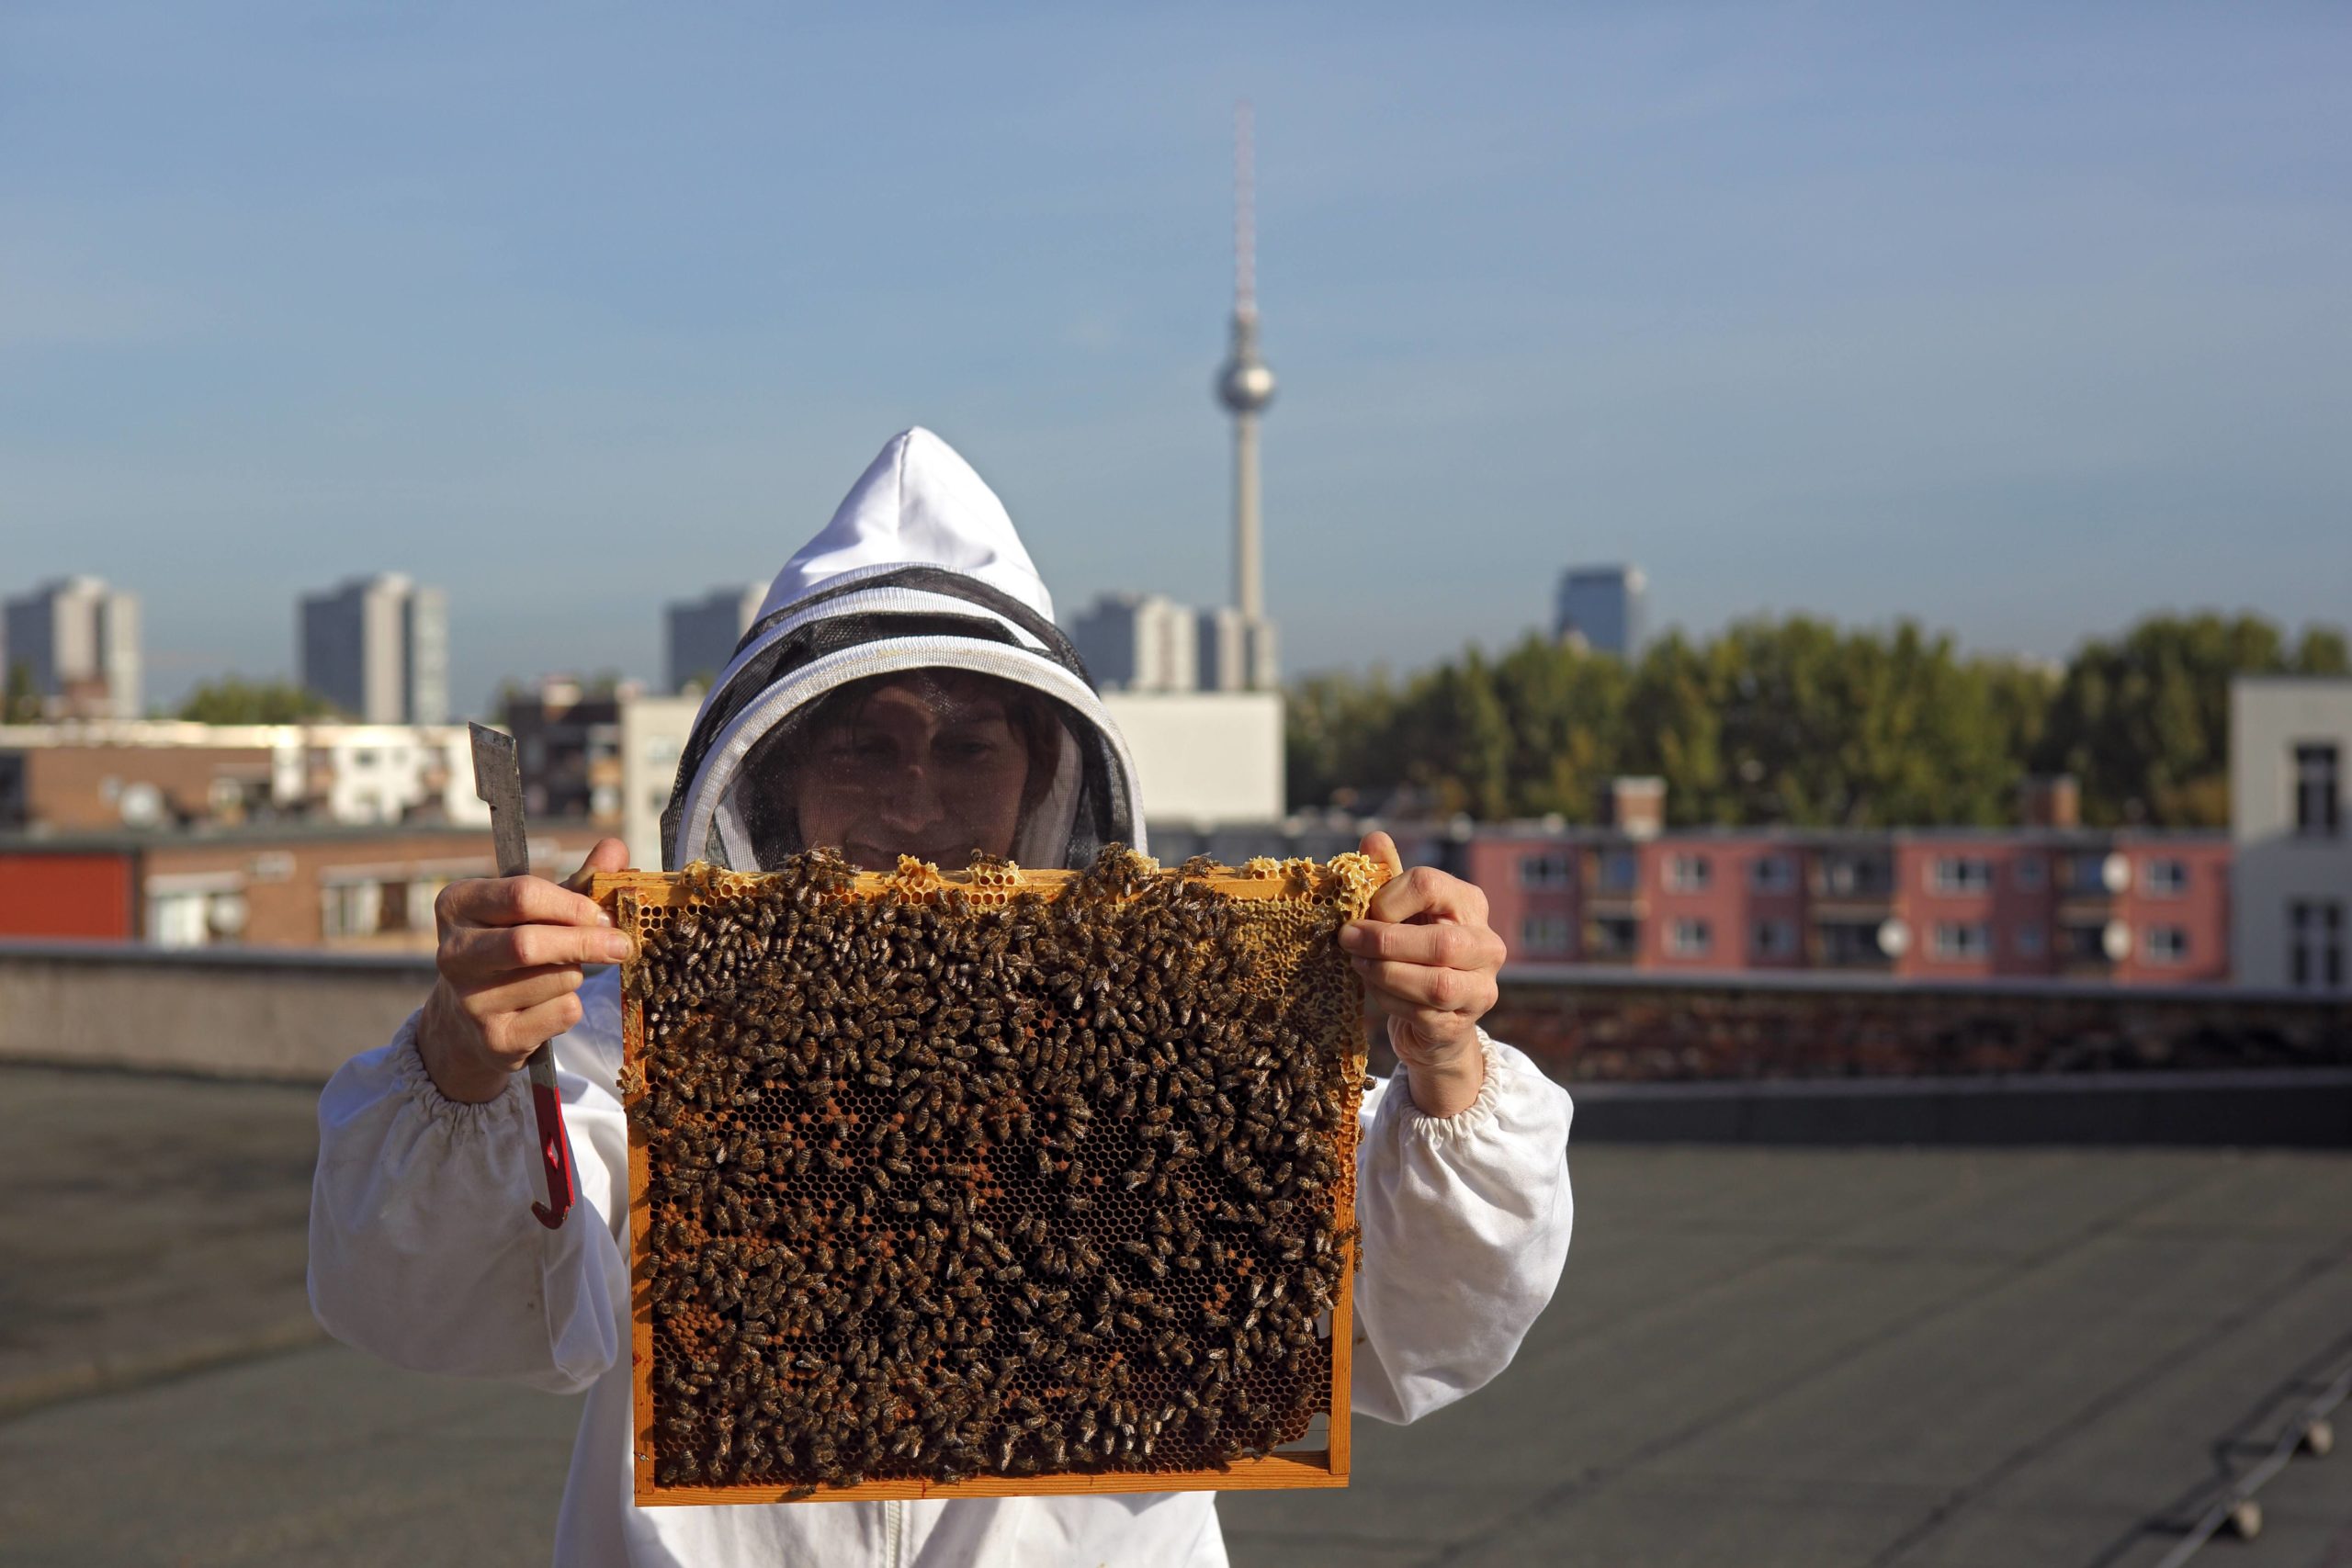 Imkerin Erika Mayr kontrolliert eine Brutwabe eines Bienenvolkes auf einem Dach eines Hauses in Mitte. Foto: Imago/Frank Sorge